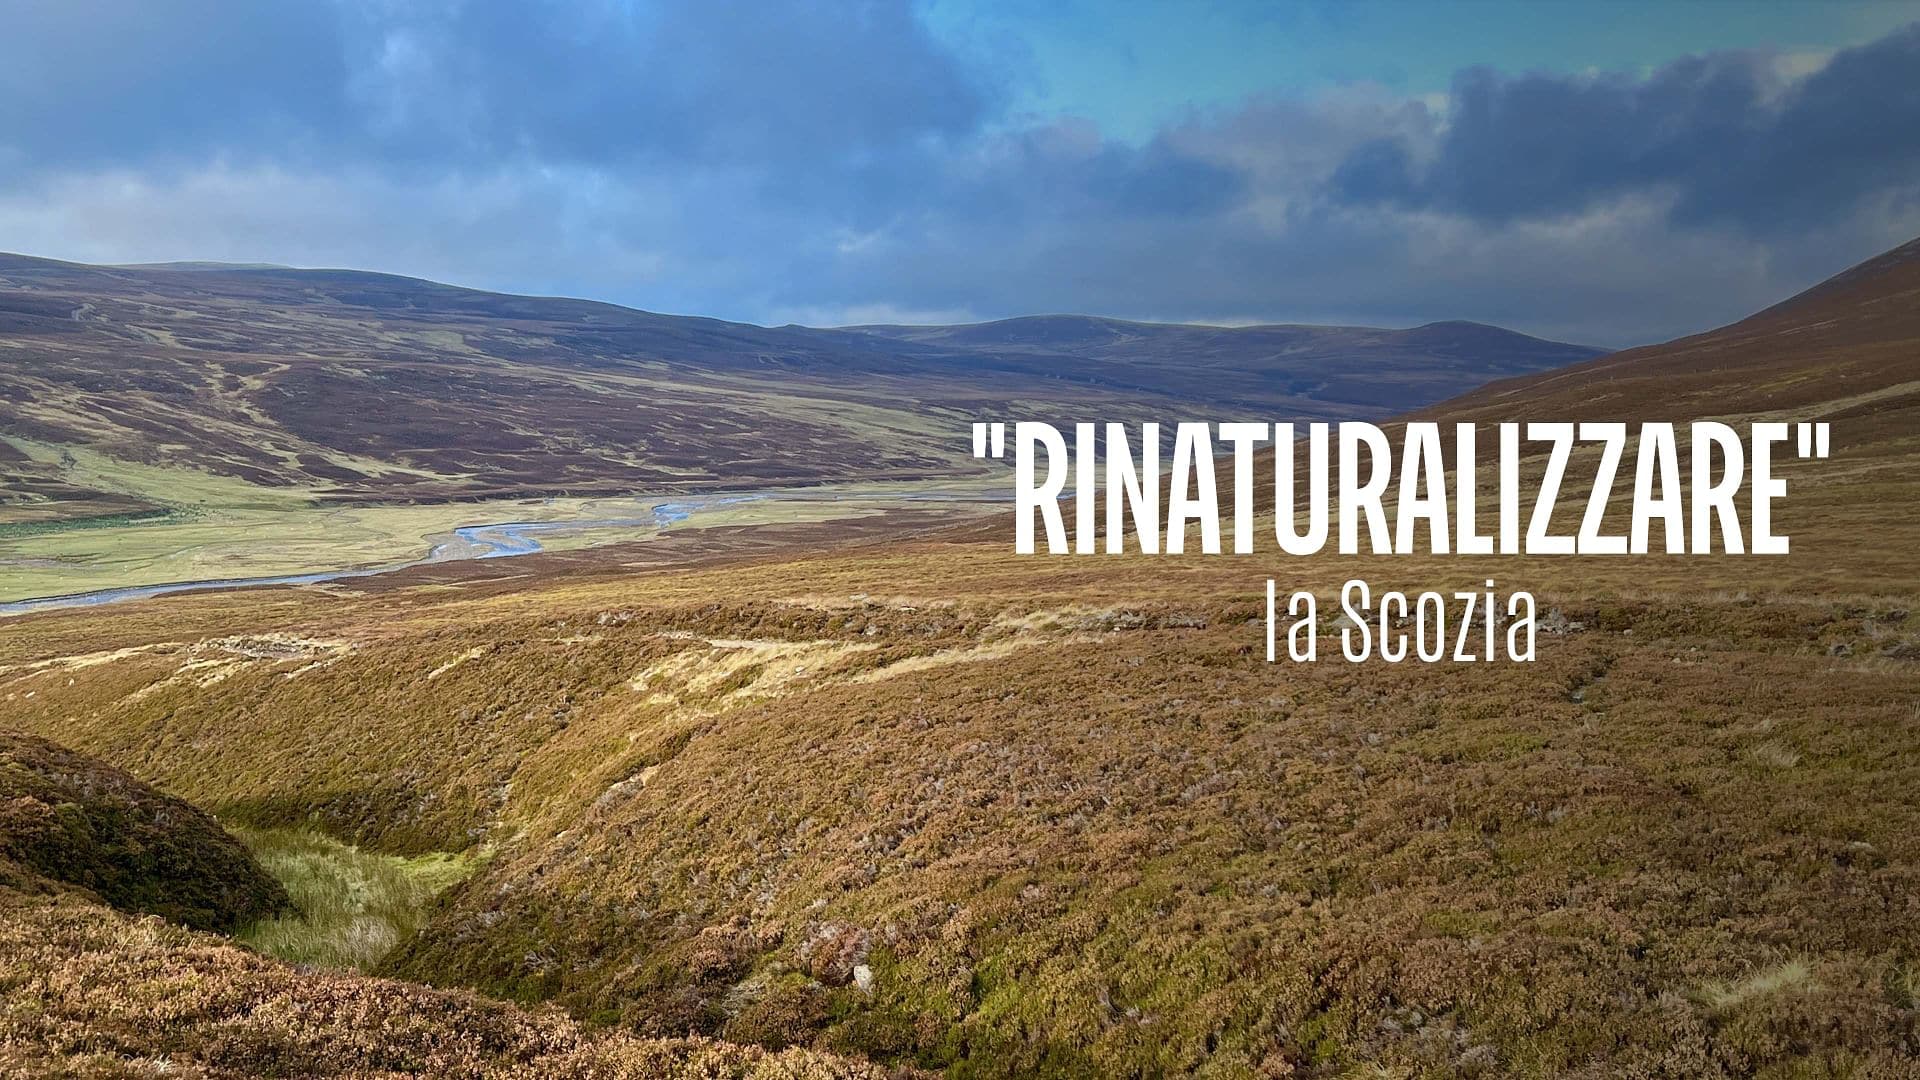 Re: sguardi sulla società - Scozia: "rinaturalizzare" le Highlands